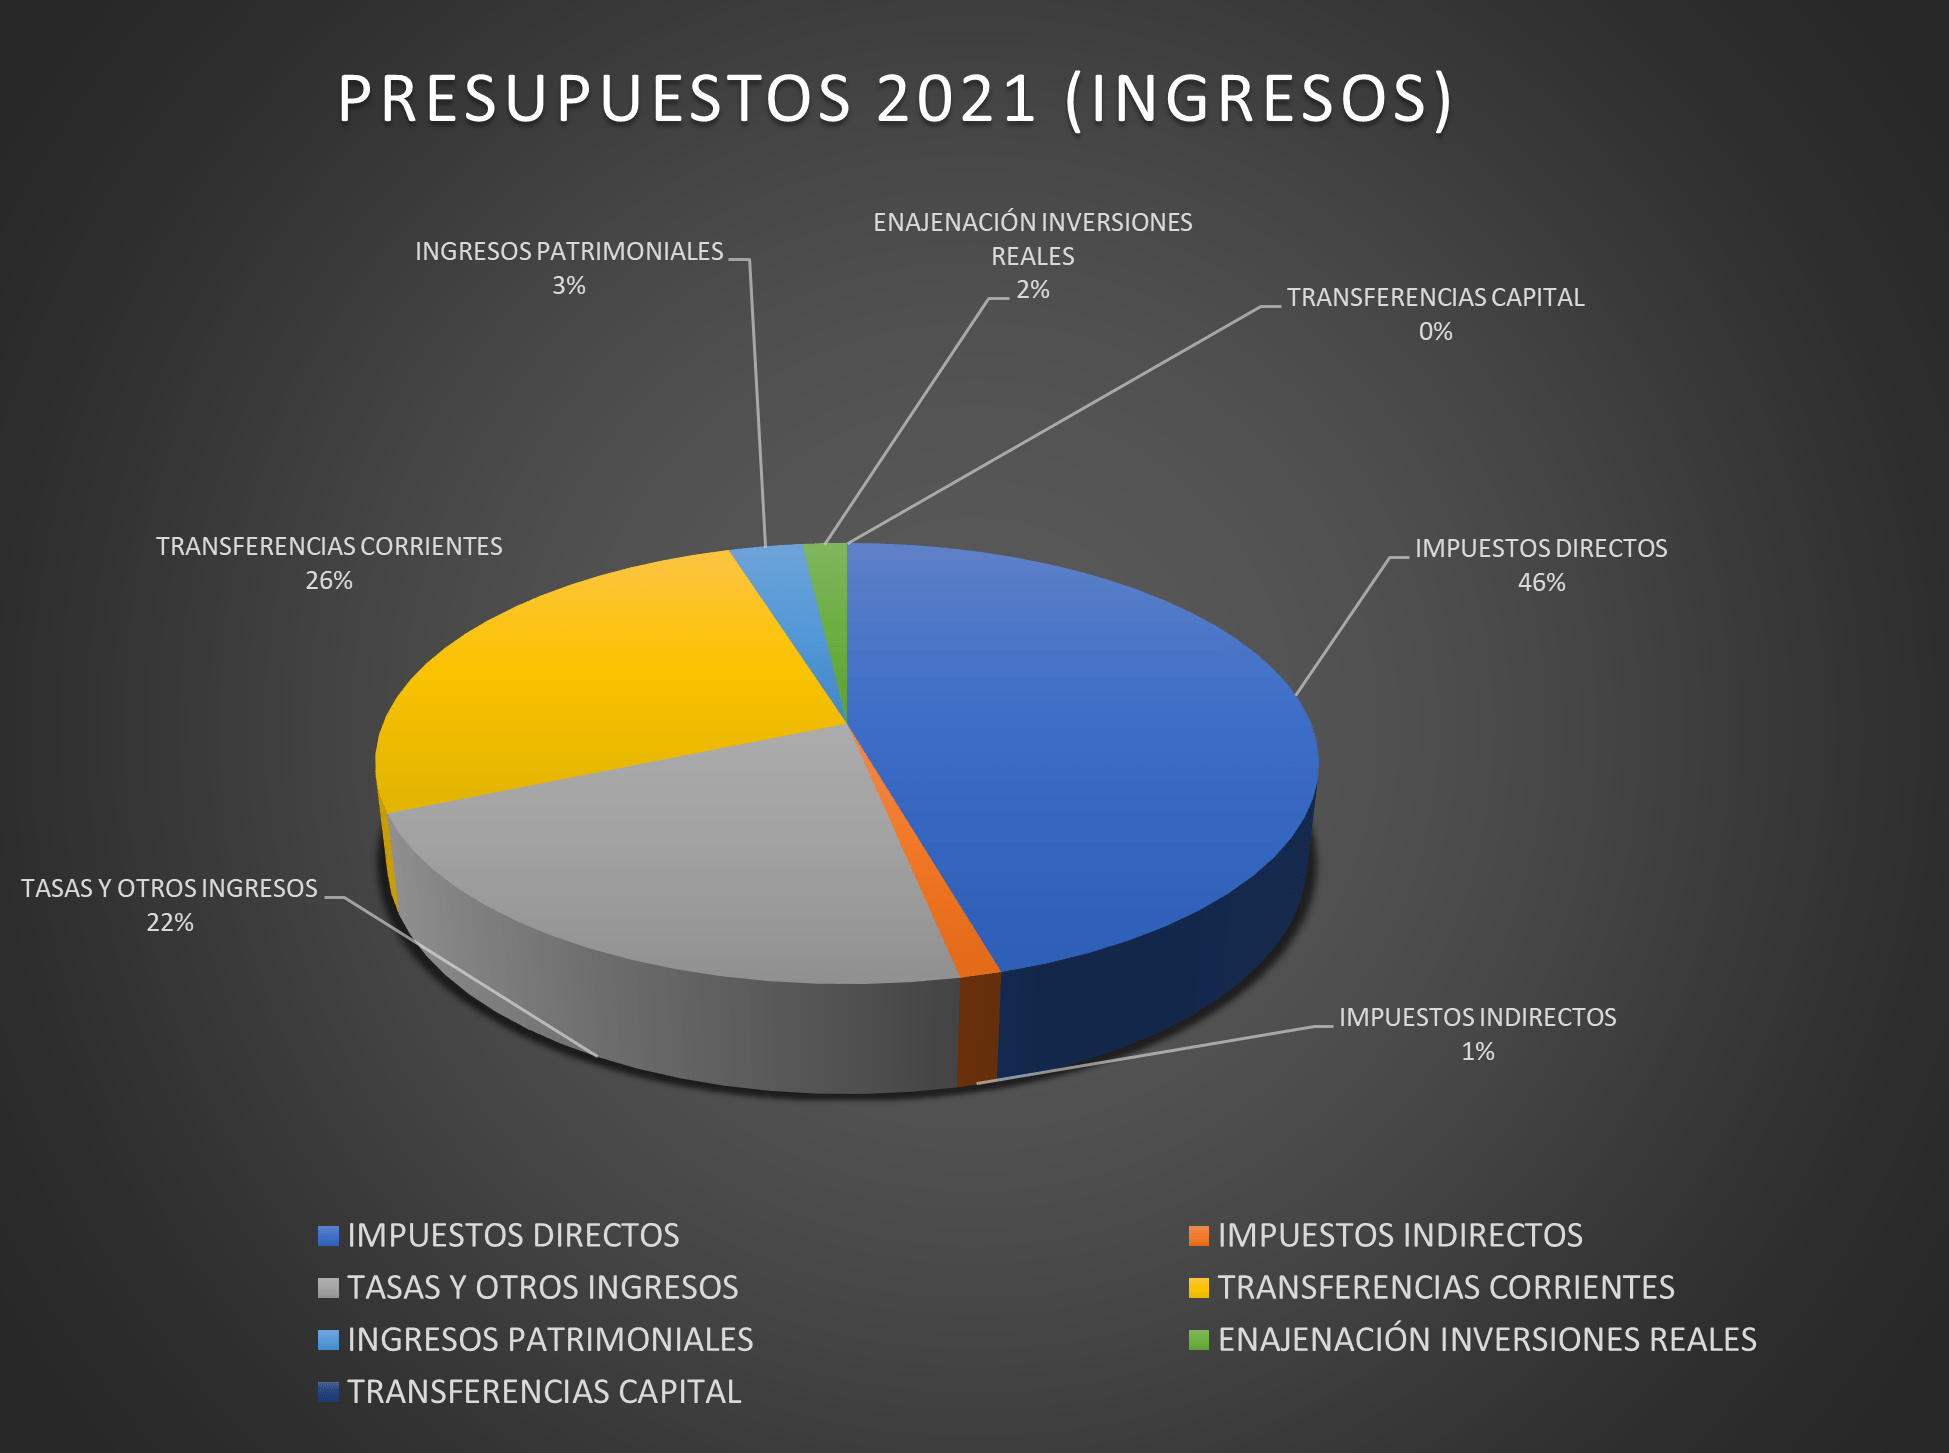 Presupuestos 2021 (ingresos)